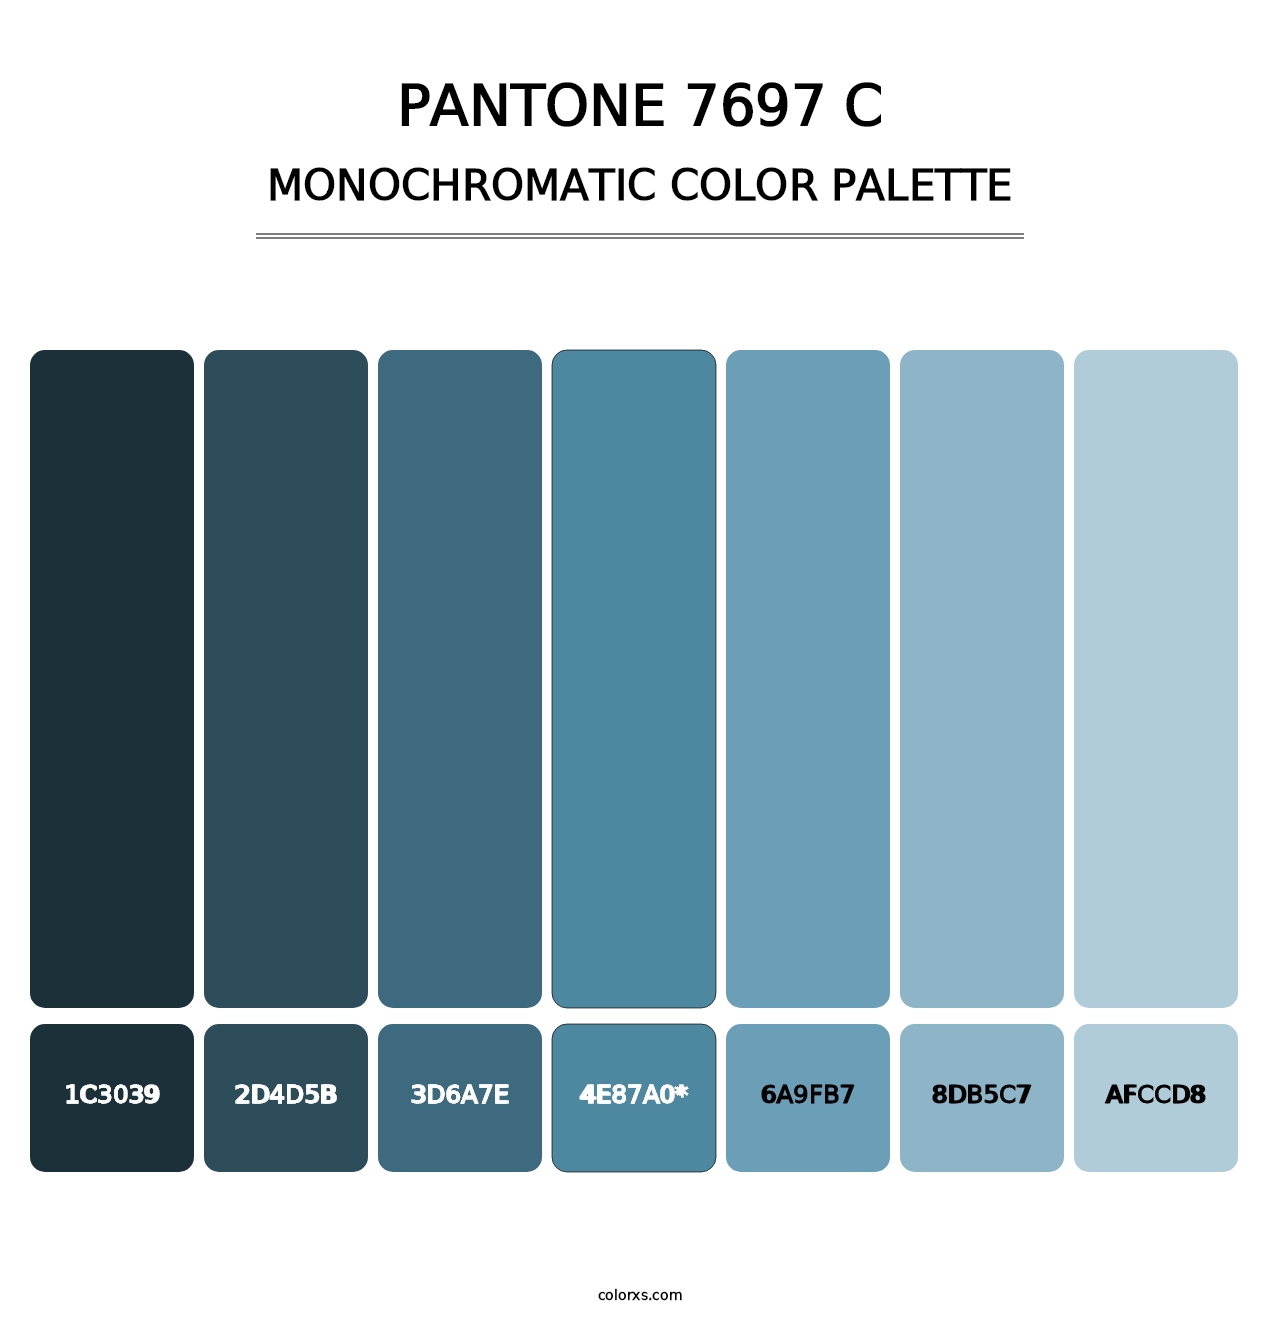 PANTONE 7697 C - Monochromatic Color Palette